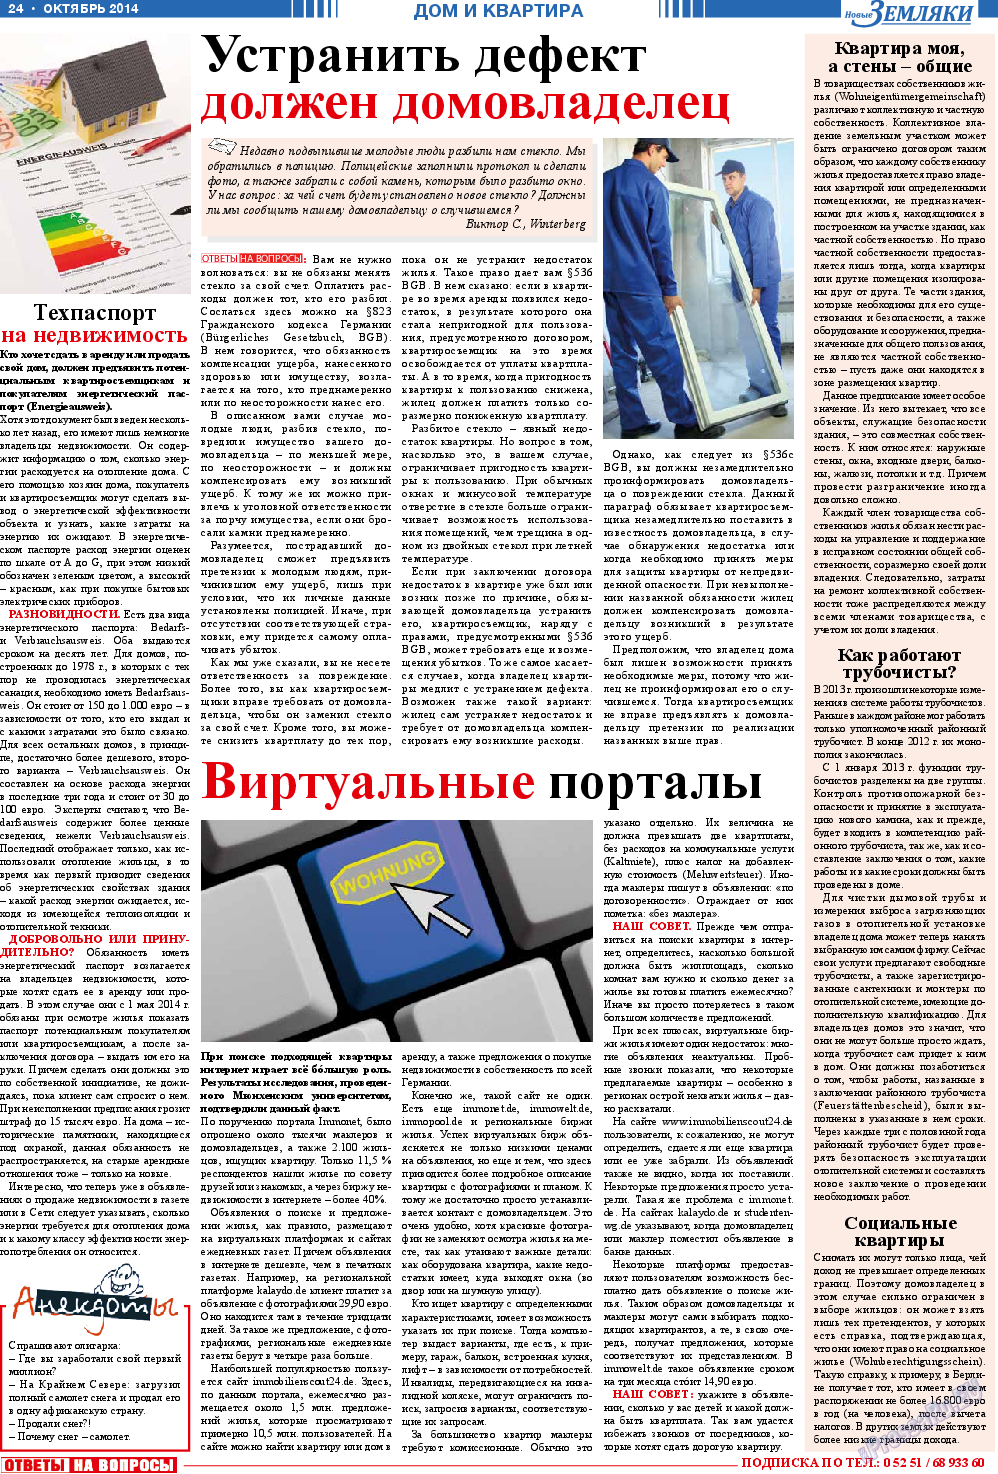 Новые Земляки, газета. 2014 №10 стр.24